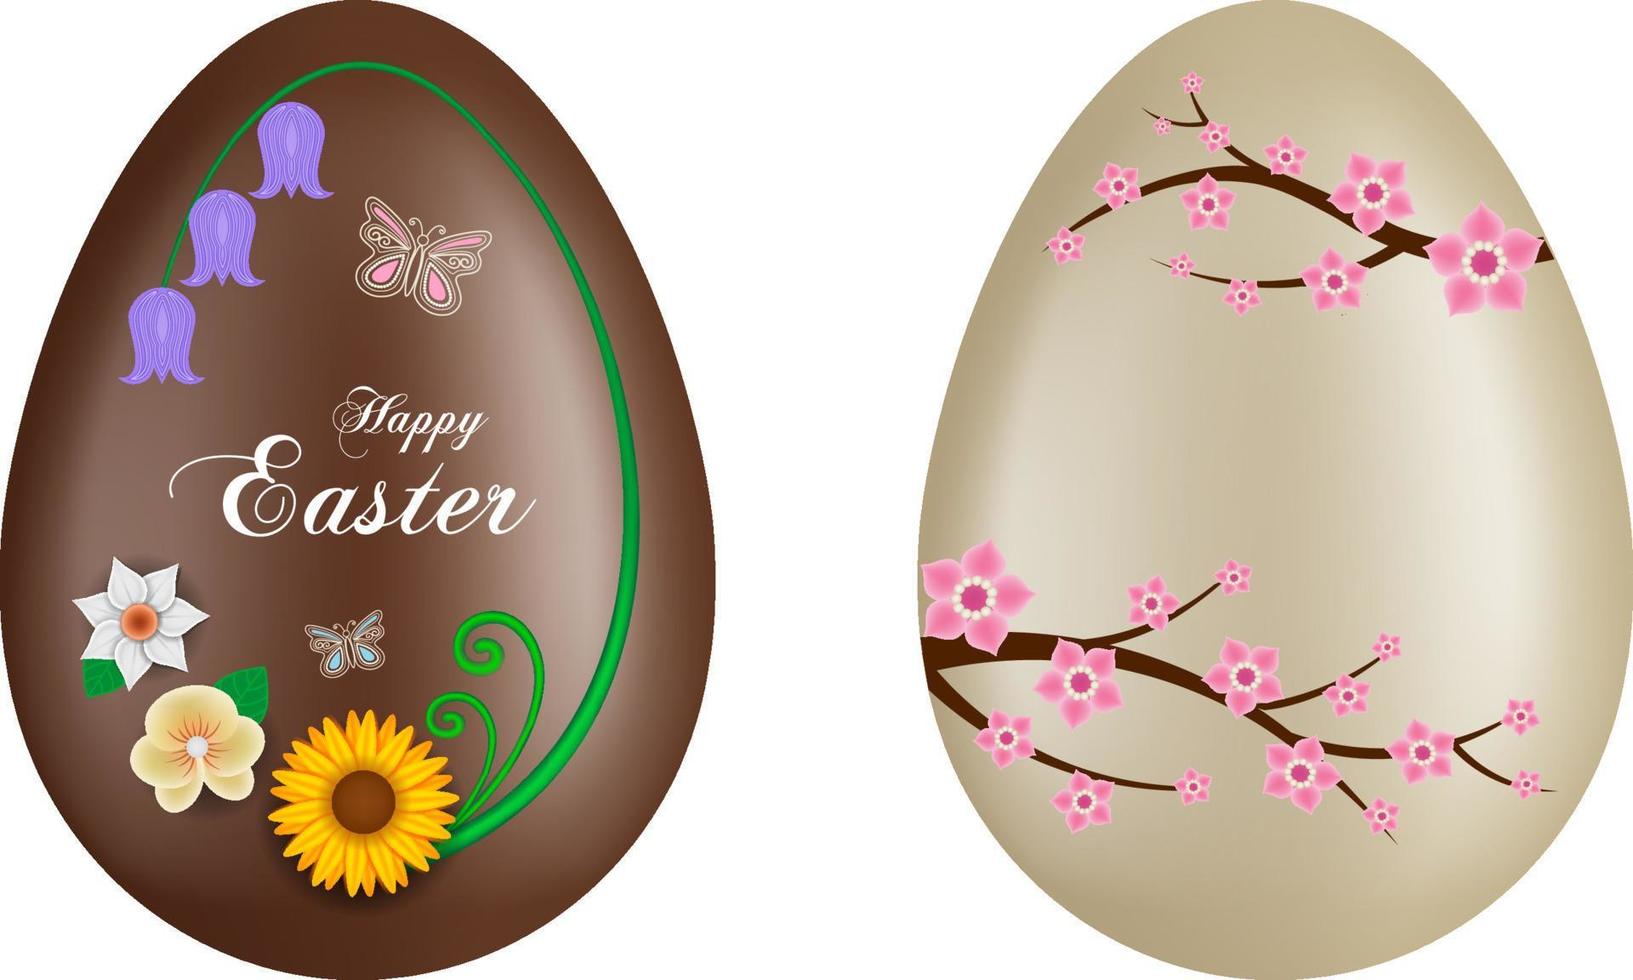 ovos de páscoa de chocolate com flores decorativas vetor